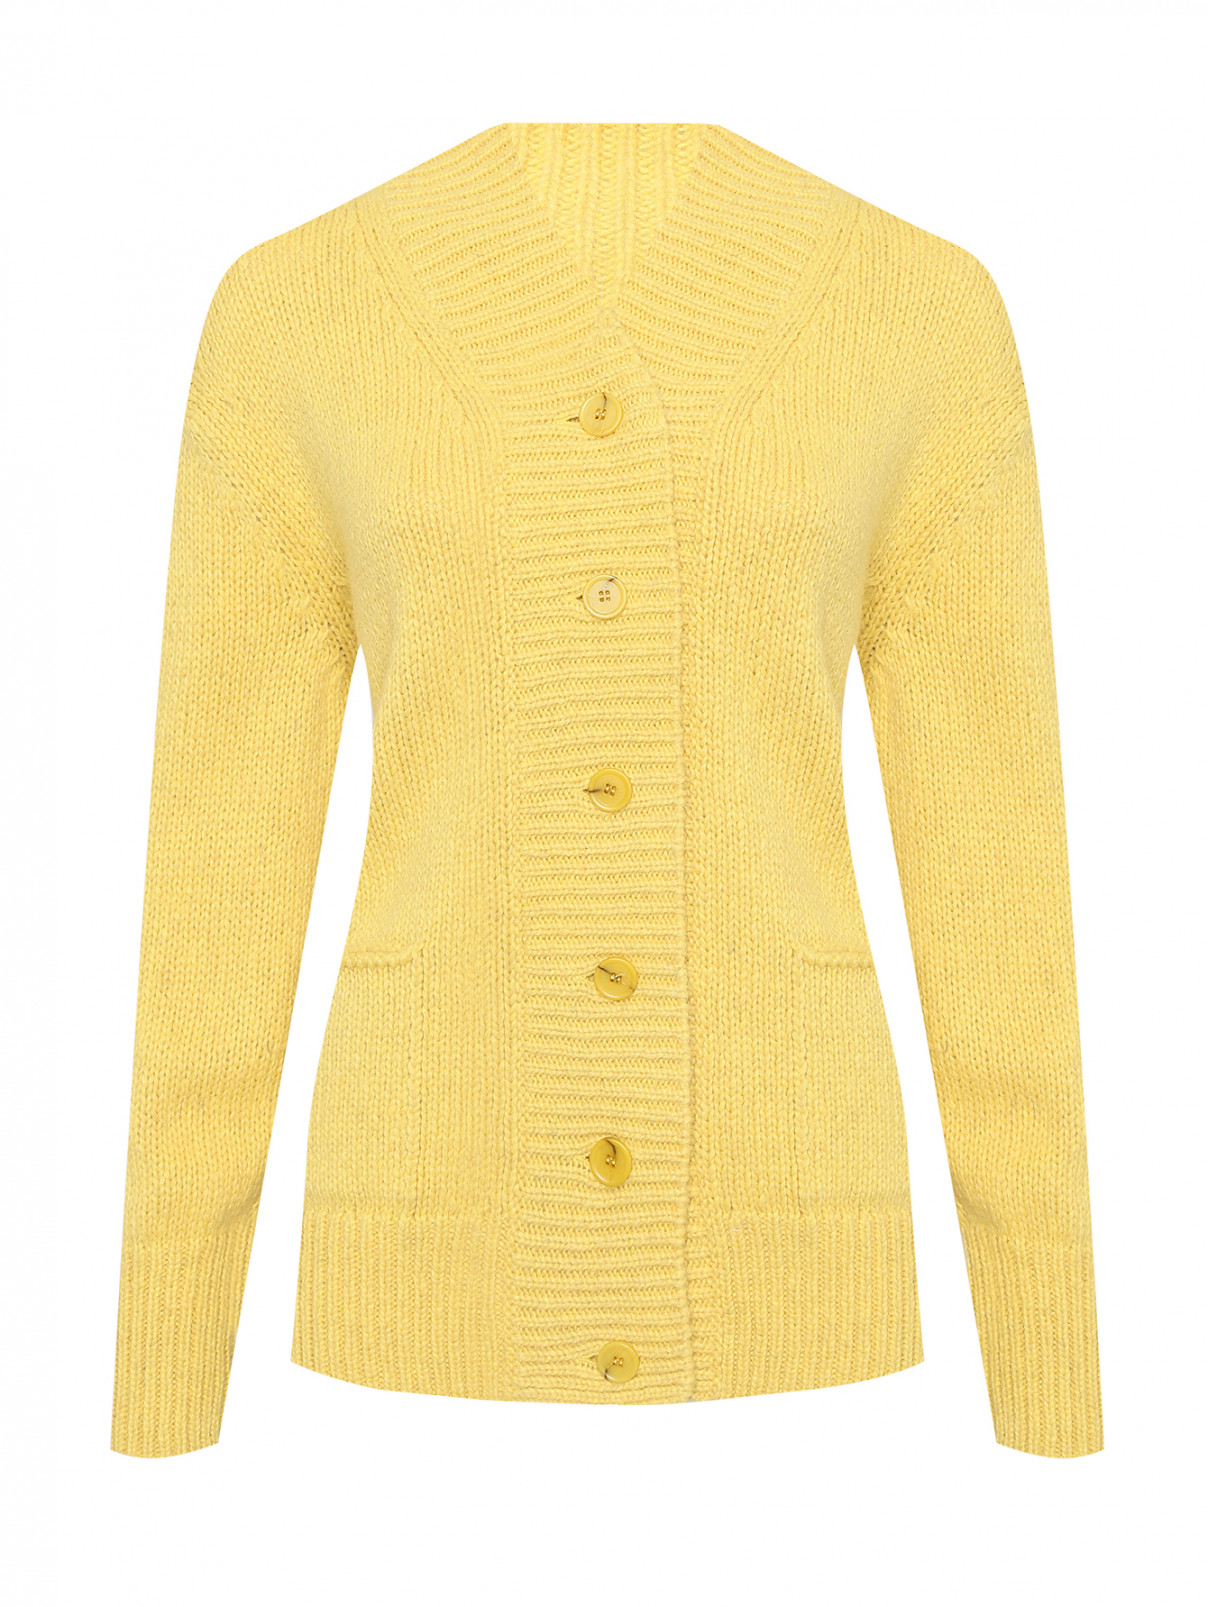 Кардиган из смешанной альпаки с карманами Ermanno Scervino  –  Общий вид  – Цвет:  Желтый